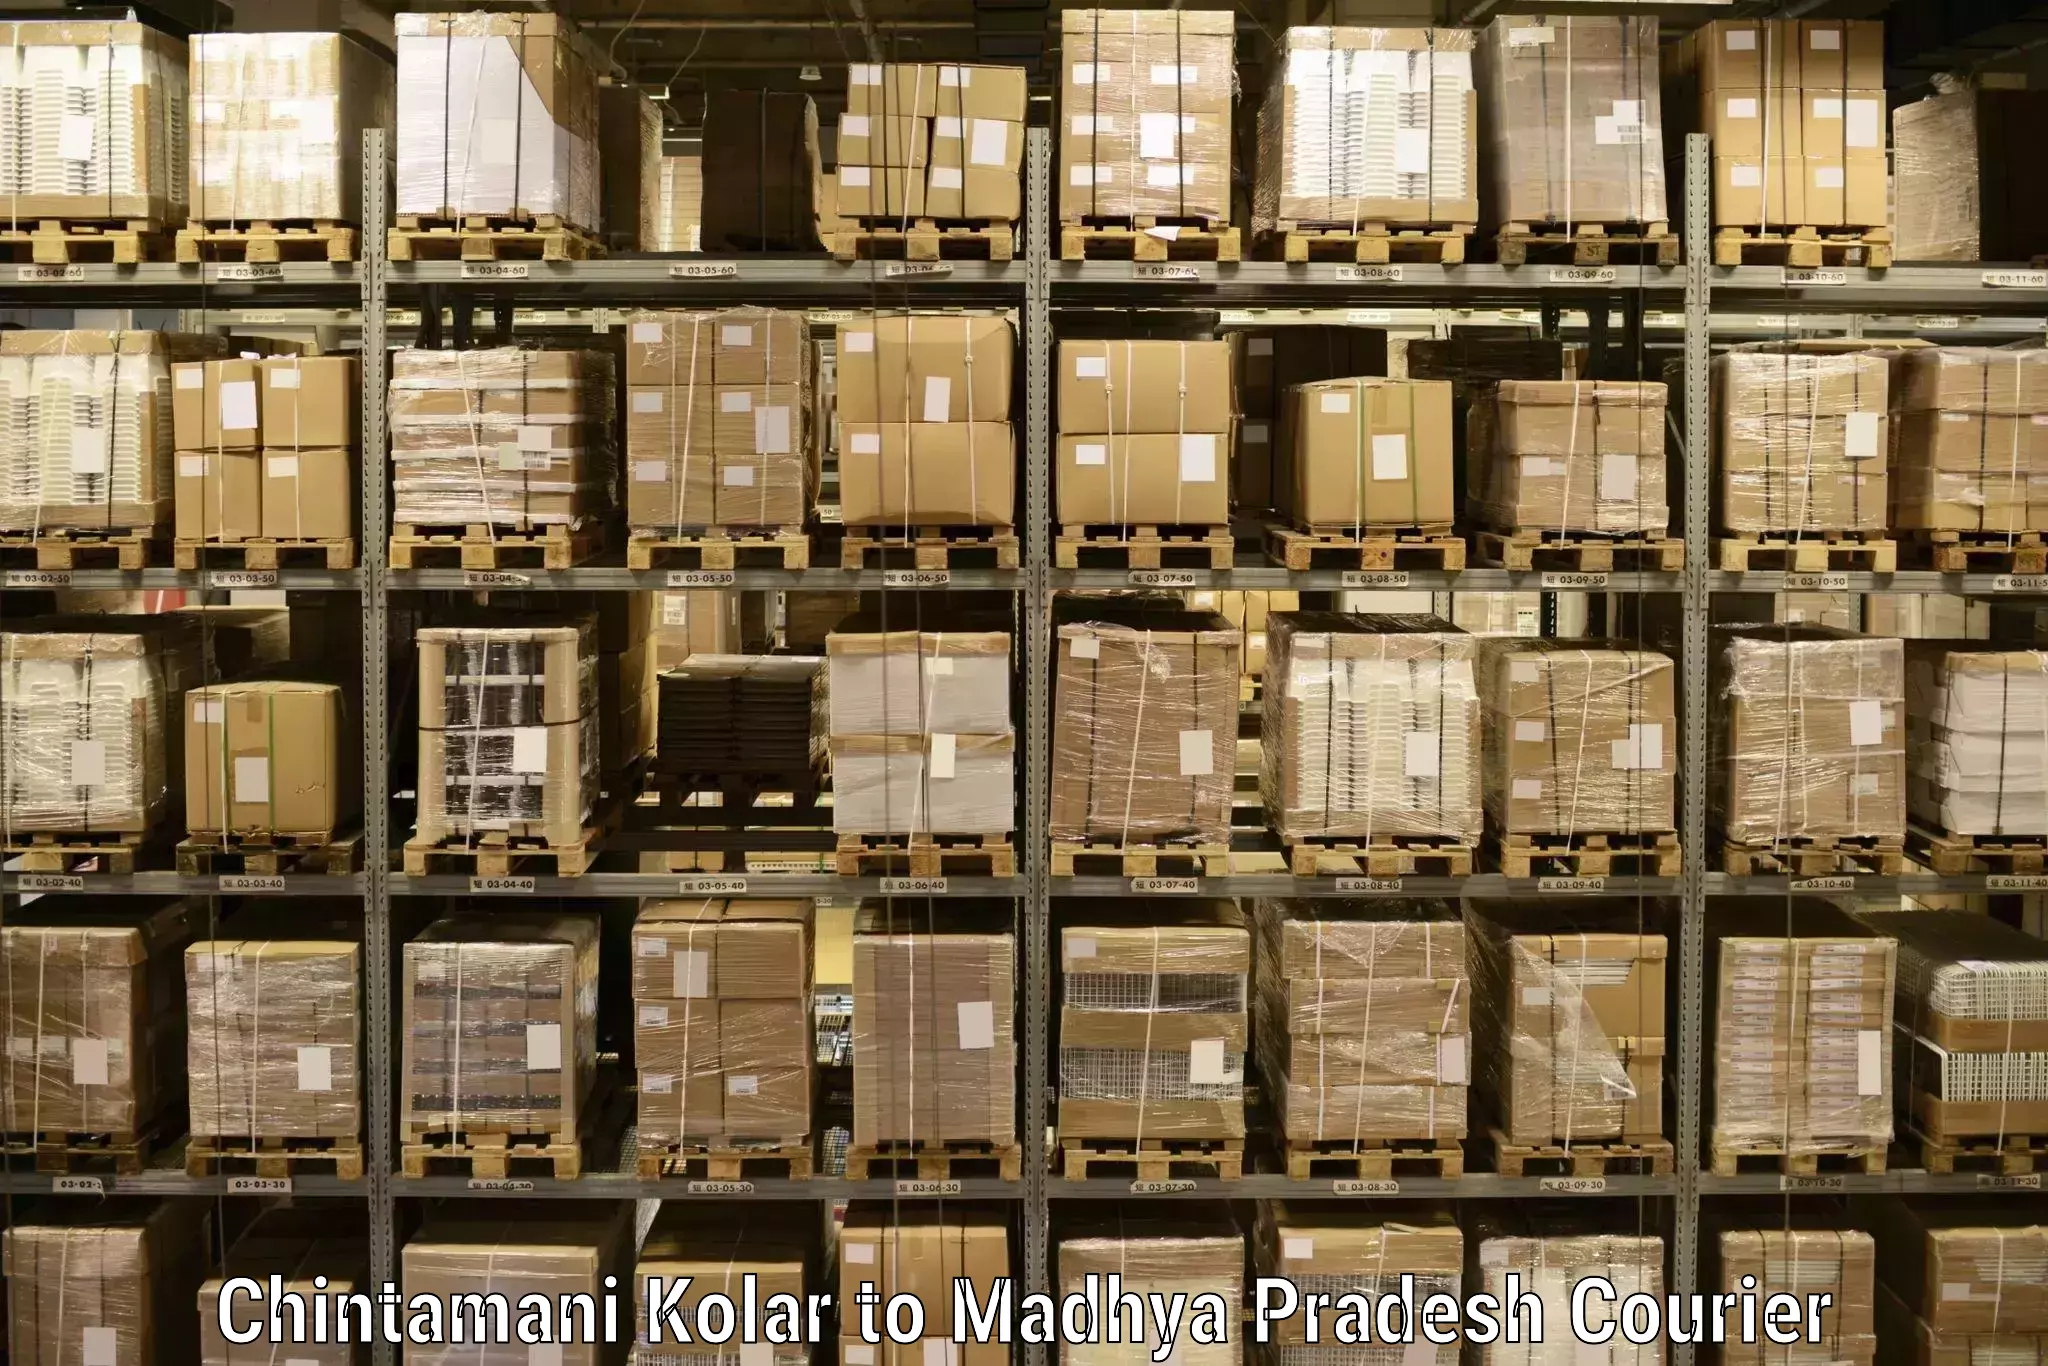 Cargo courier service Chintamani Kolar to Jhunku